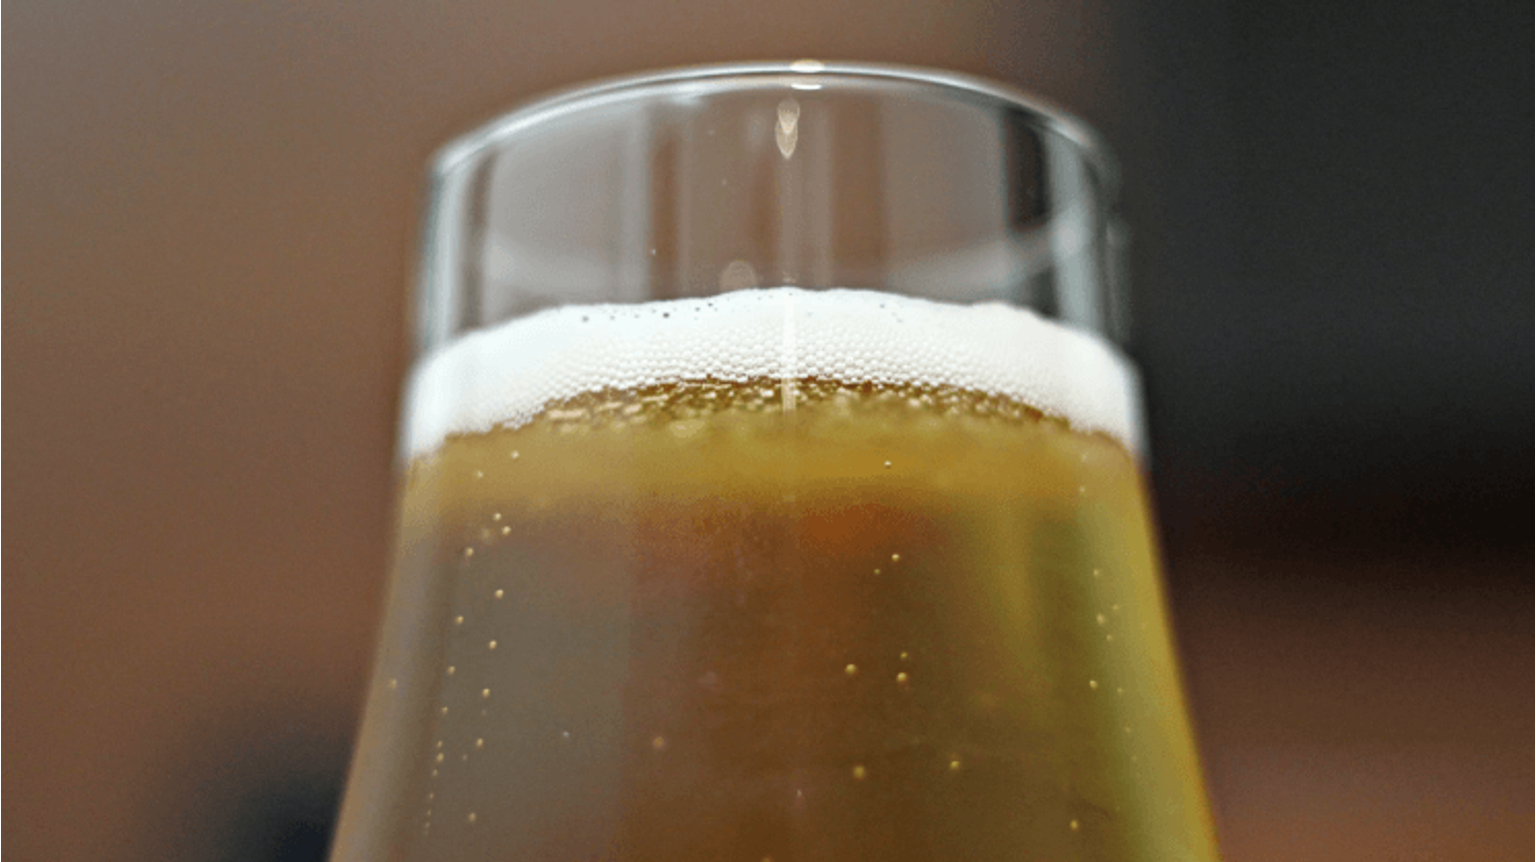 thumbnail for blog article named: Wanneer werd het eerste alcoholvrije bier gedronken?